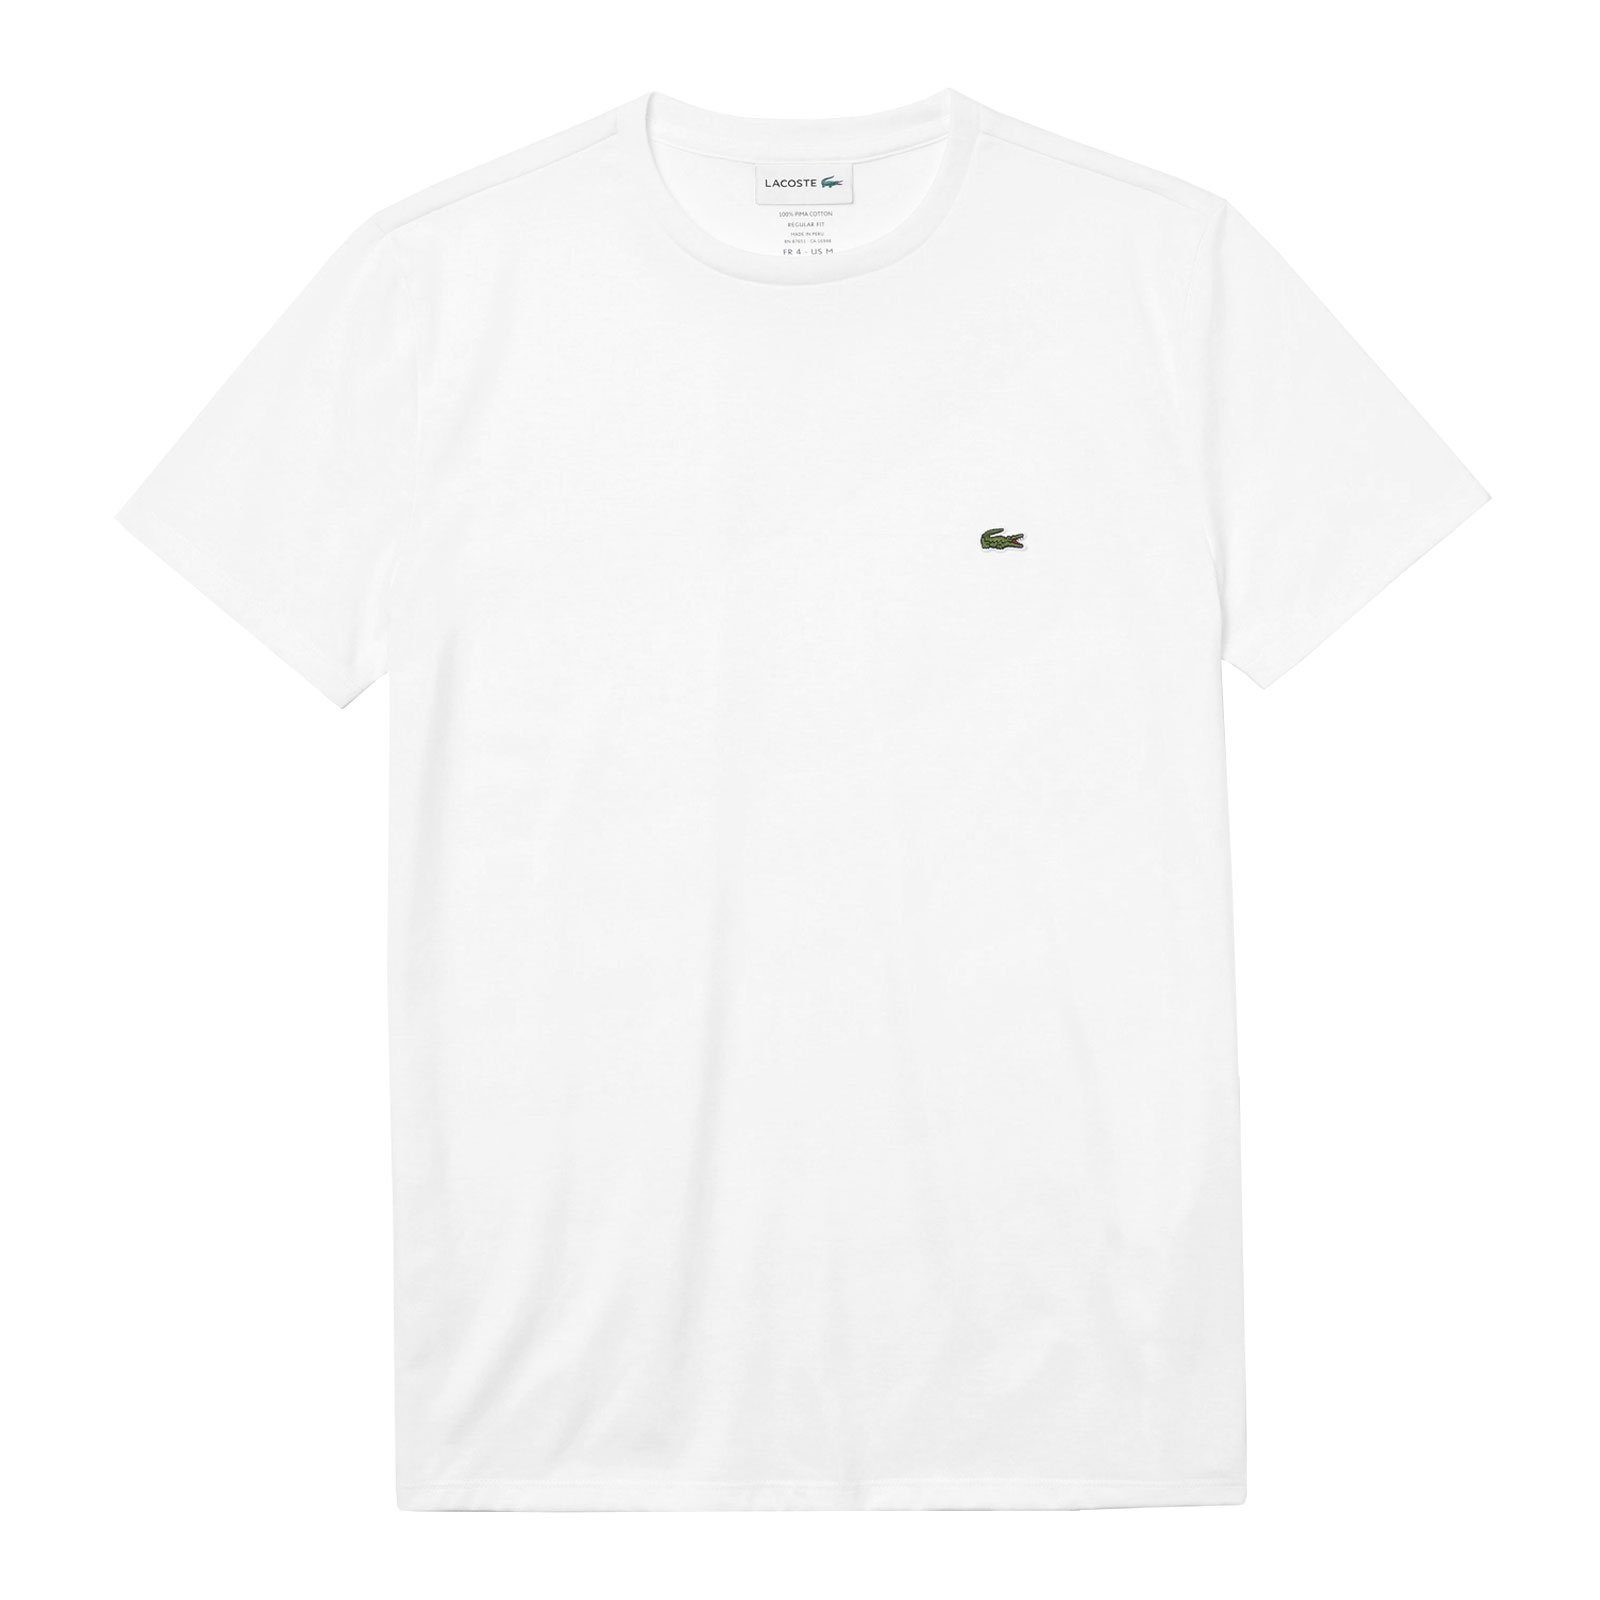 Lacoste T-Shirt Crew Neck Cotton mit kleinem Krokodil auf der Brust 001 white